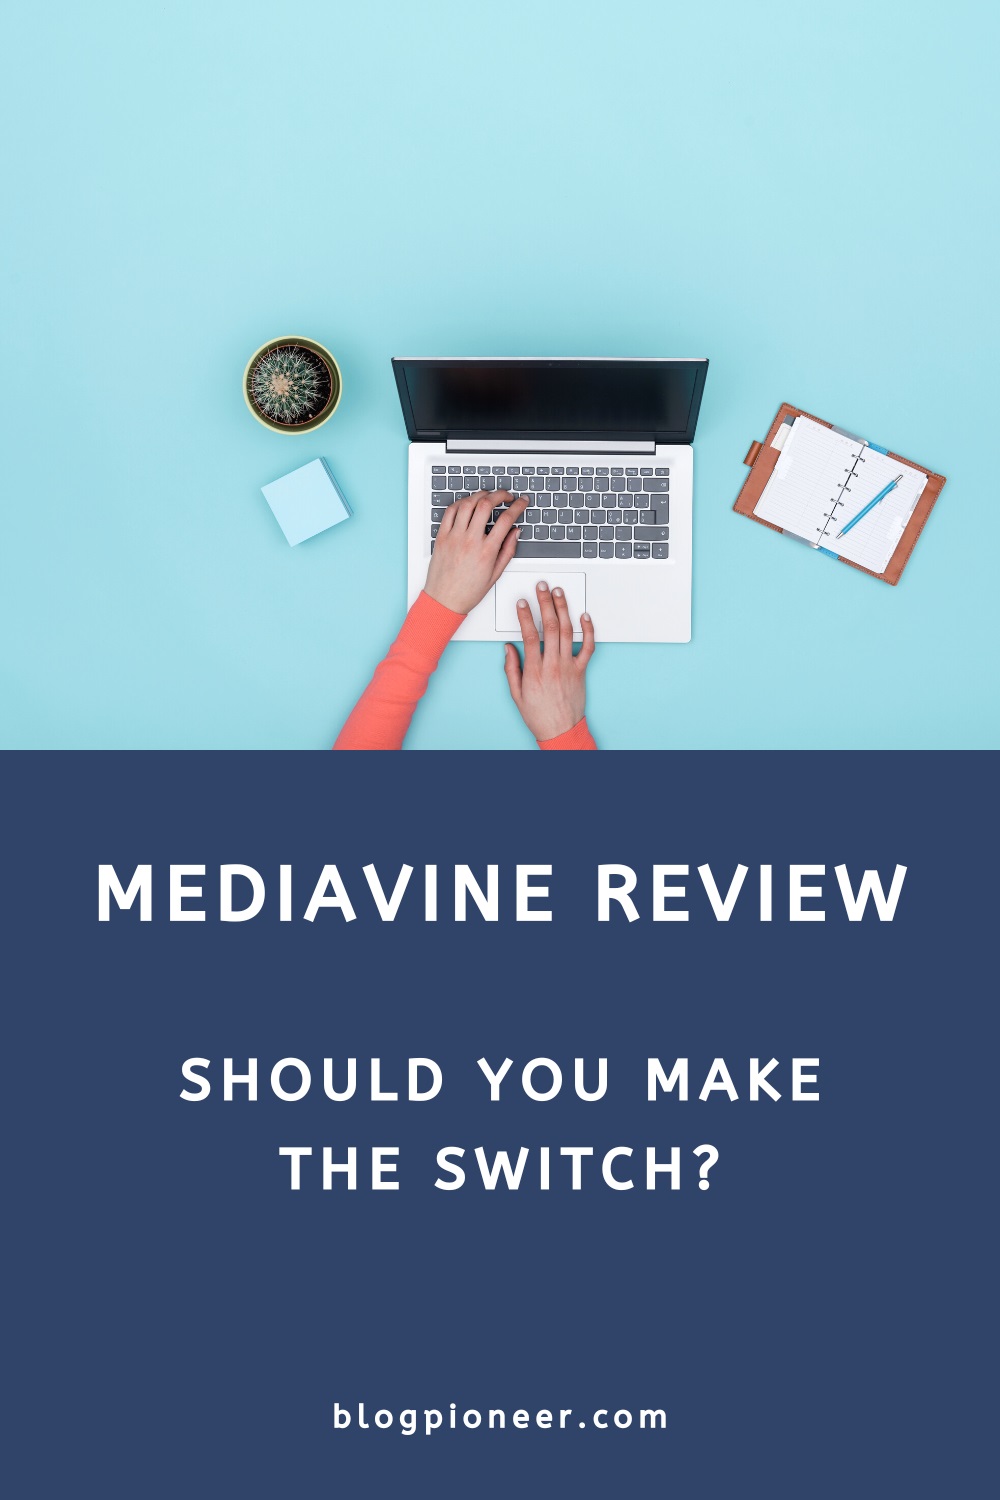 A review of Mediavine